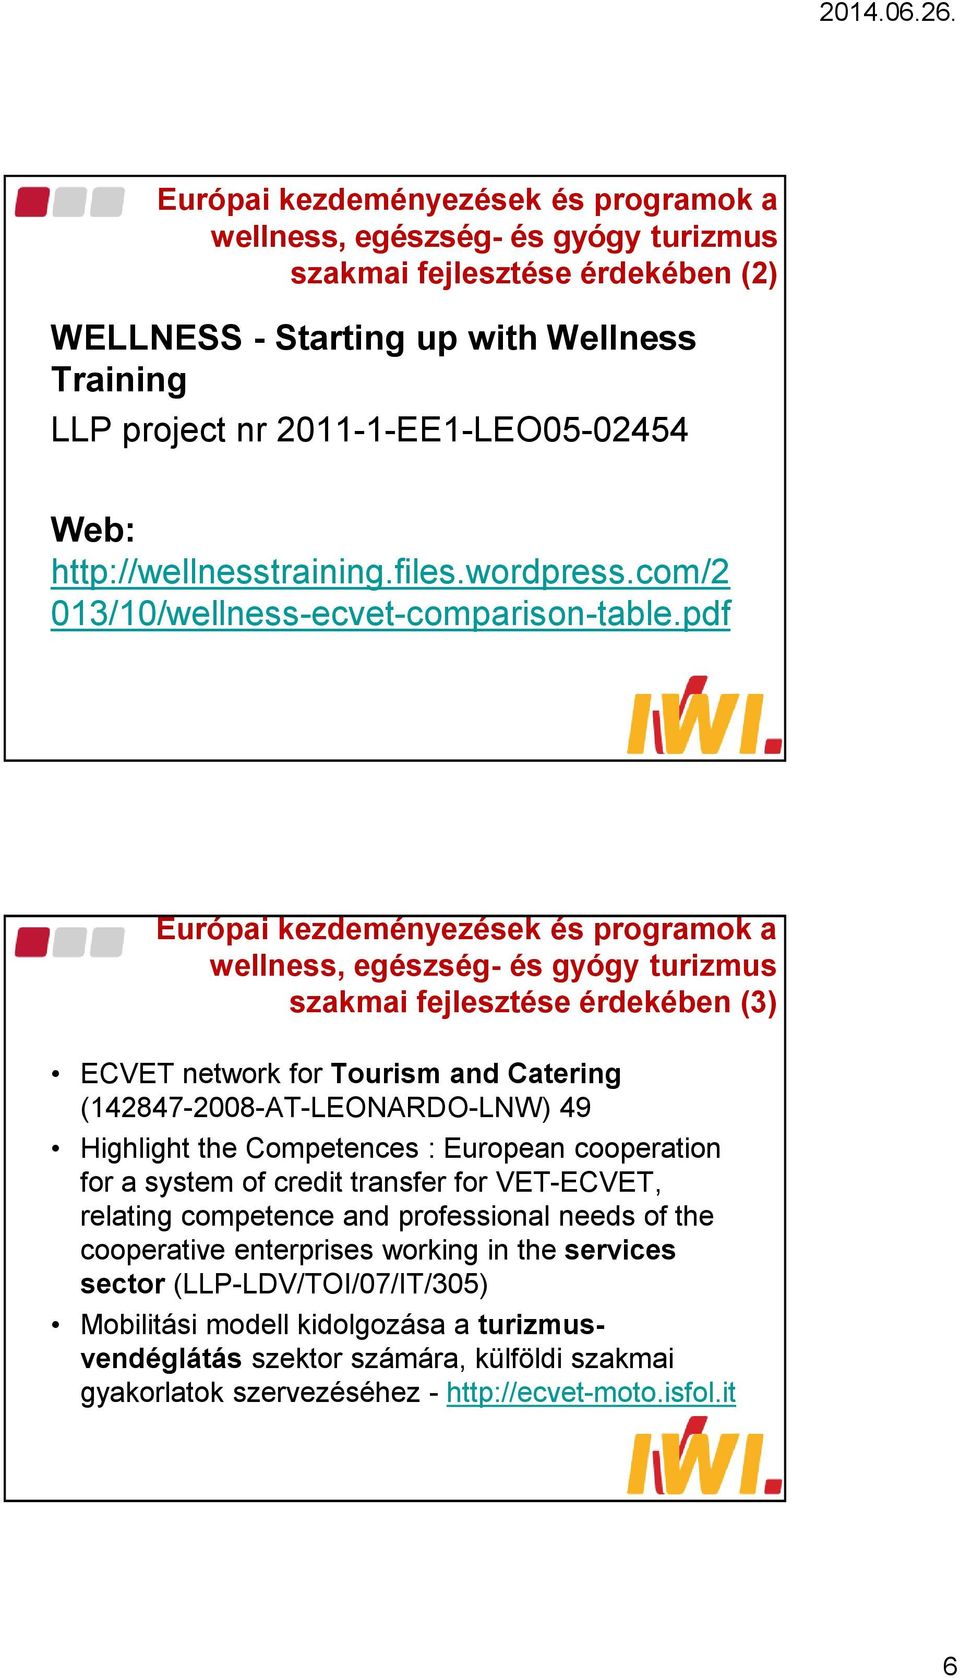 pdf Európai kezdeményezések és programok a wellness, egészség- és gyógy turizmus szakmai fejlesztése érdekében (3) ECVET network for Tourism and Catering (142847-2008-AT-LEONARDO-LNW) 49 Highlight